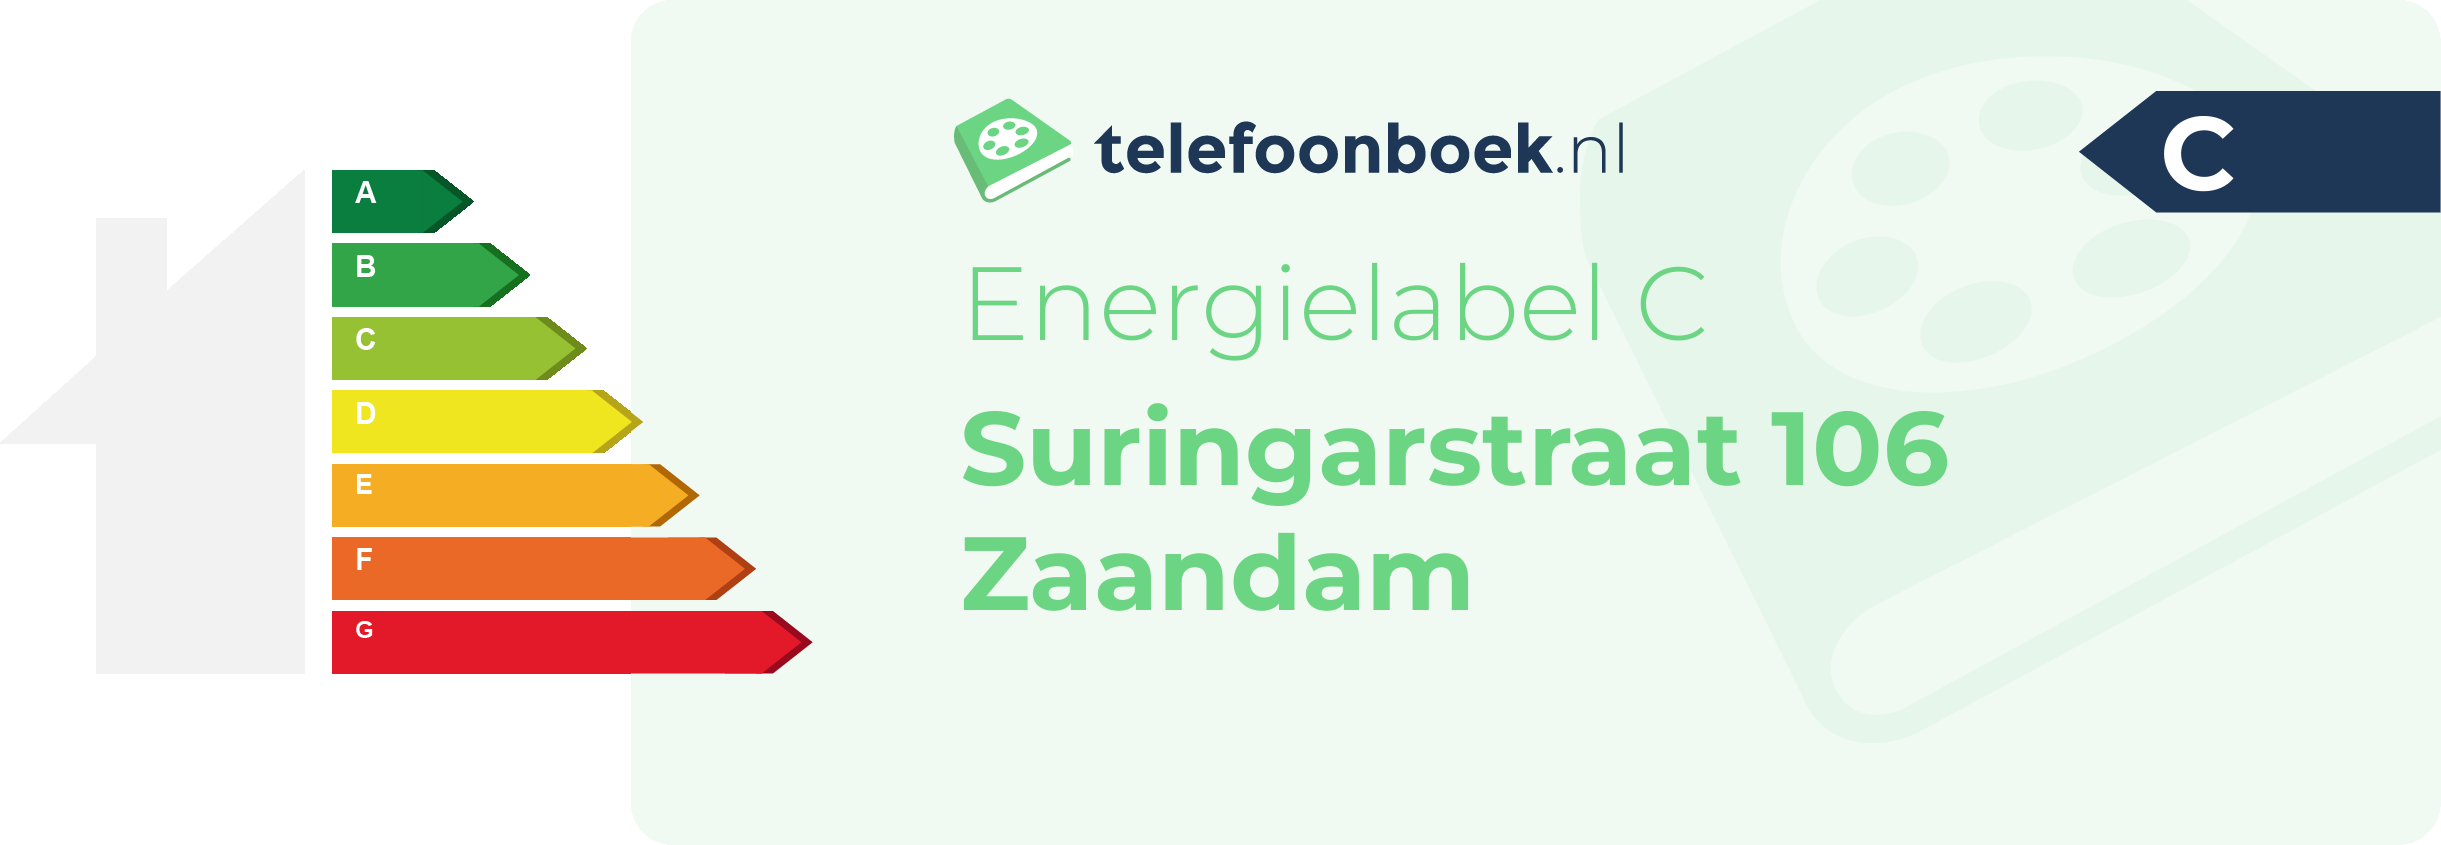 Energielabel Suringarstraat 106 Zaandam